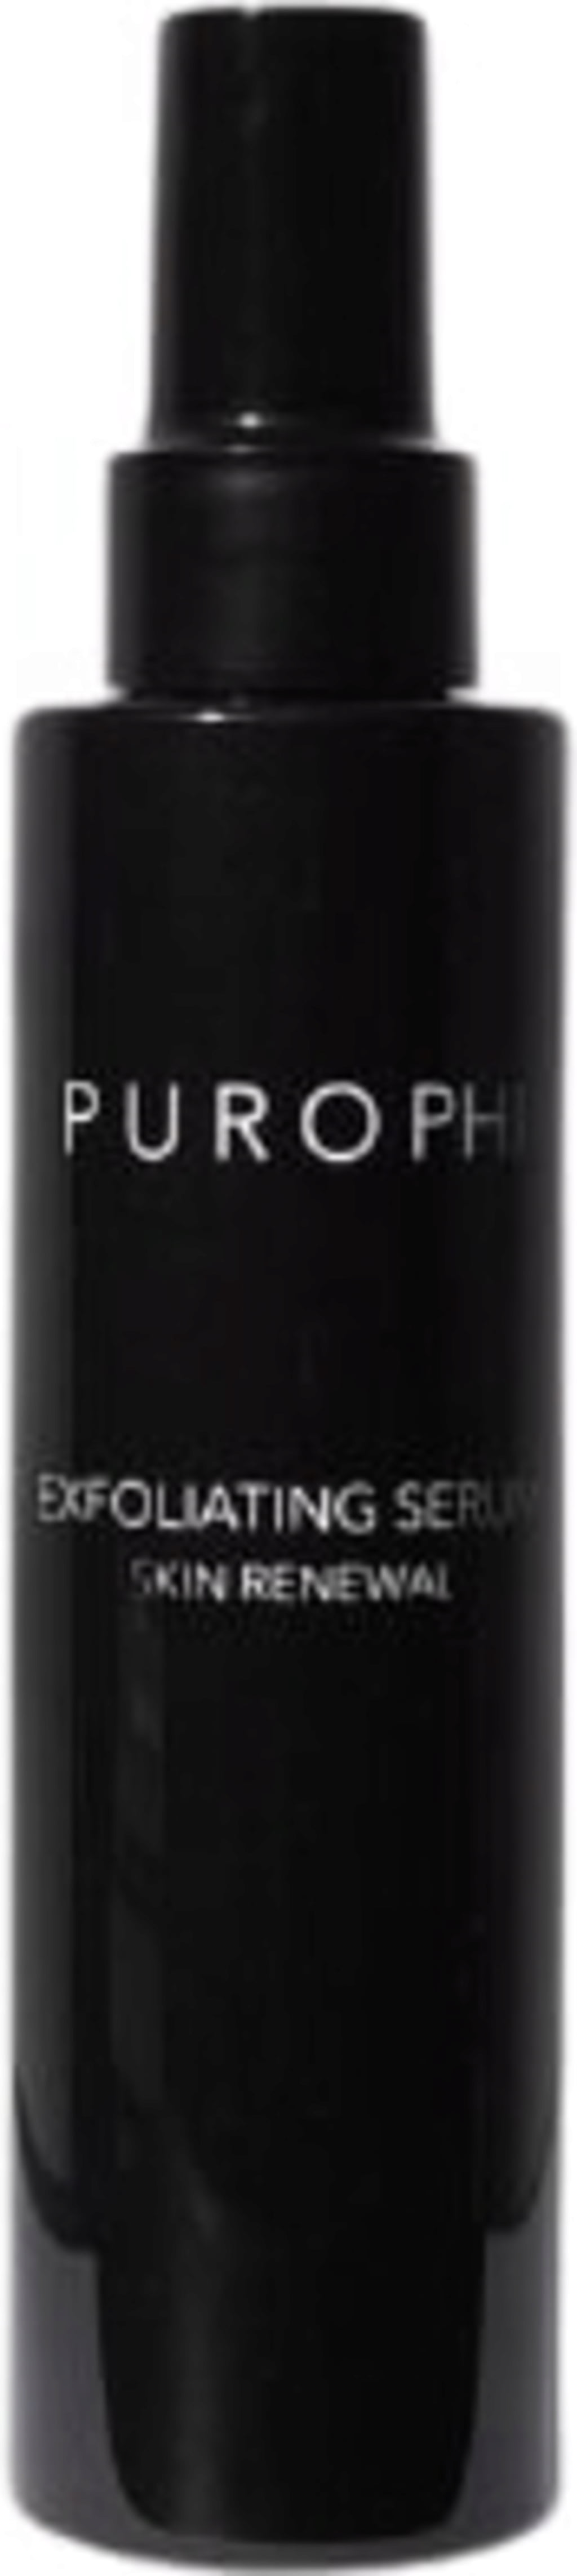 PUROPHI Skin Renewal Exfoliating Serum - 150 ml